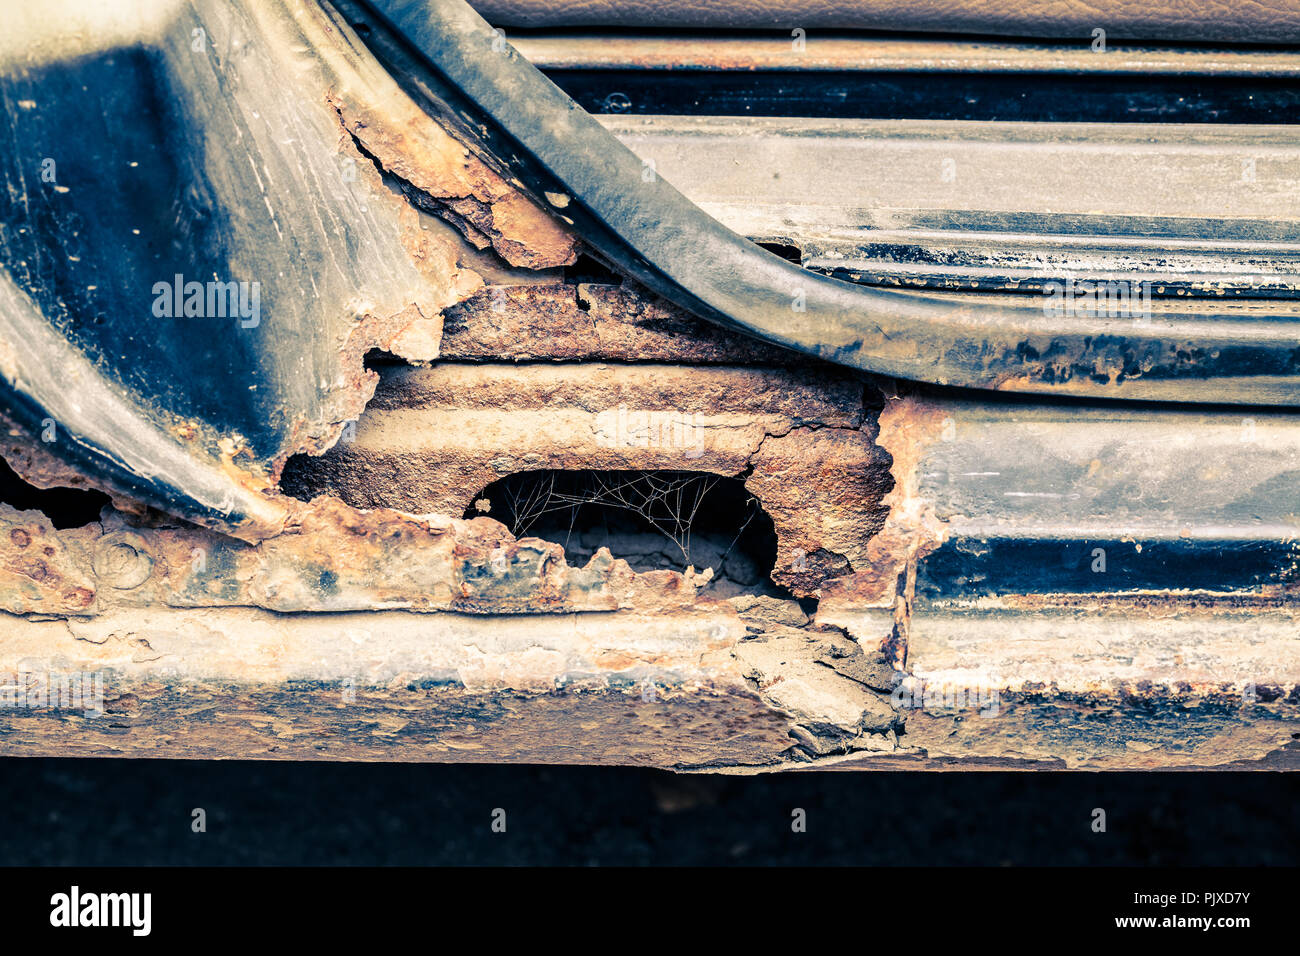 Rusty Schwelle von Auto als backgroun verwendet. Retro Style  Stockfotografie - Alamy